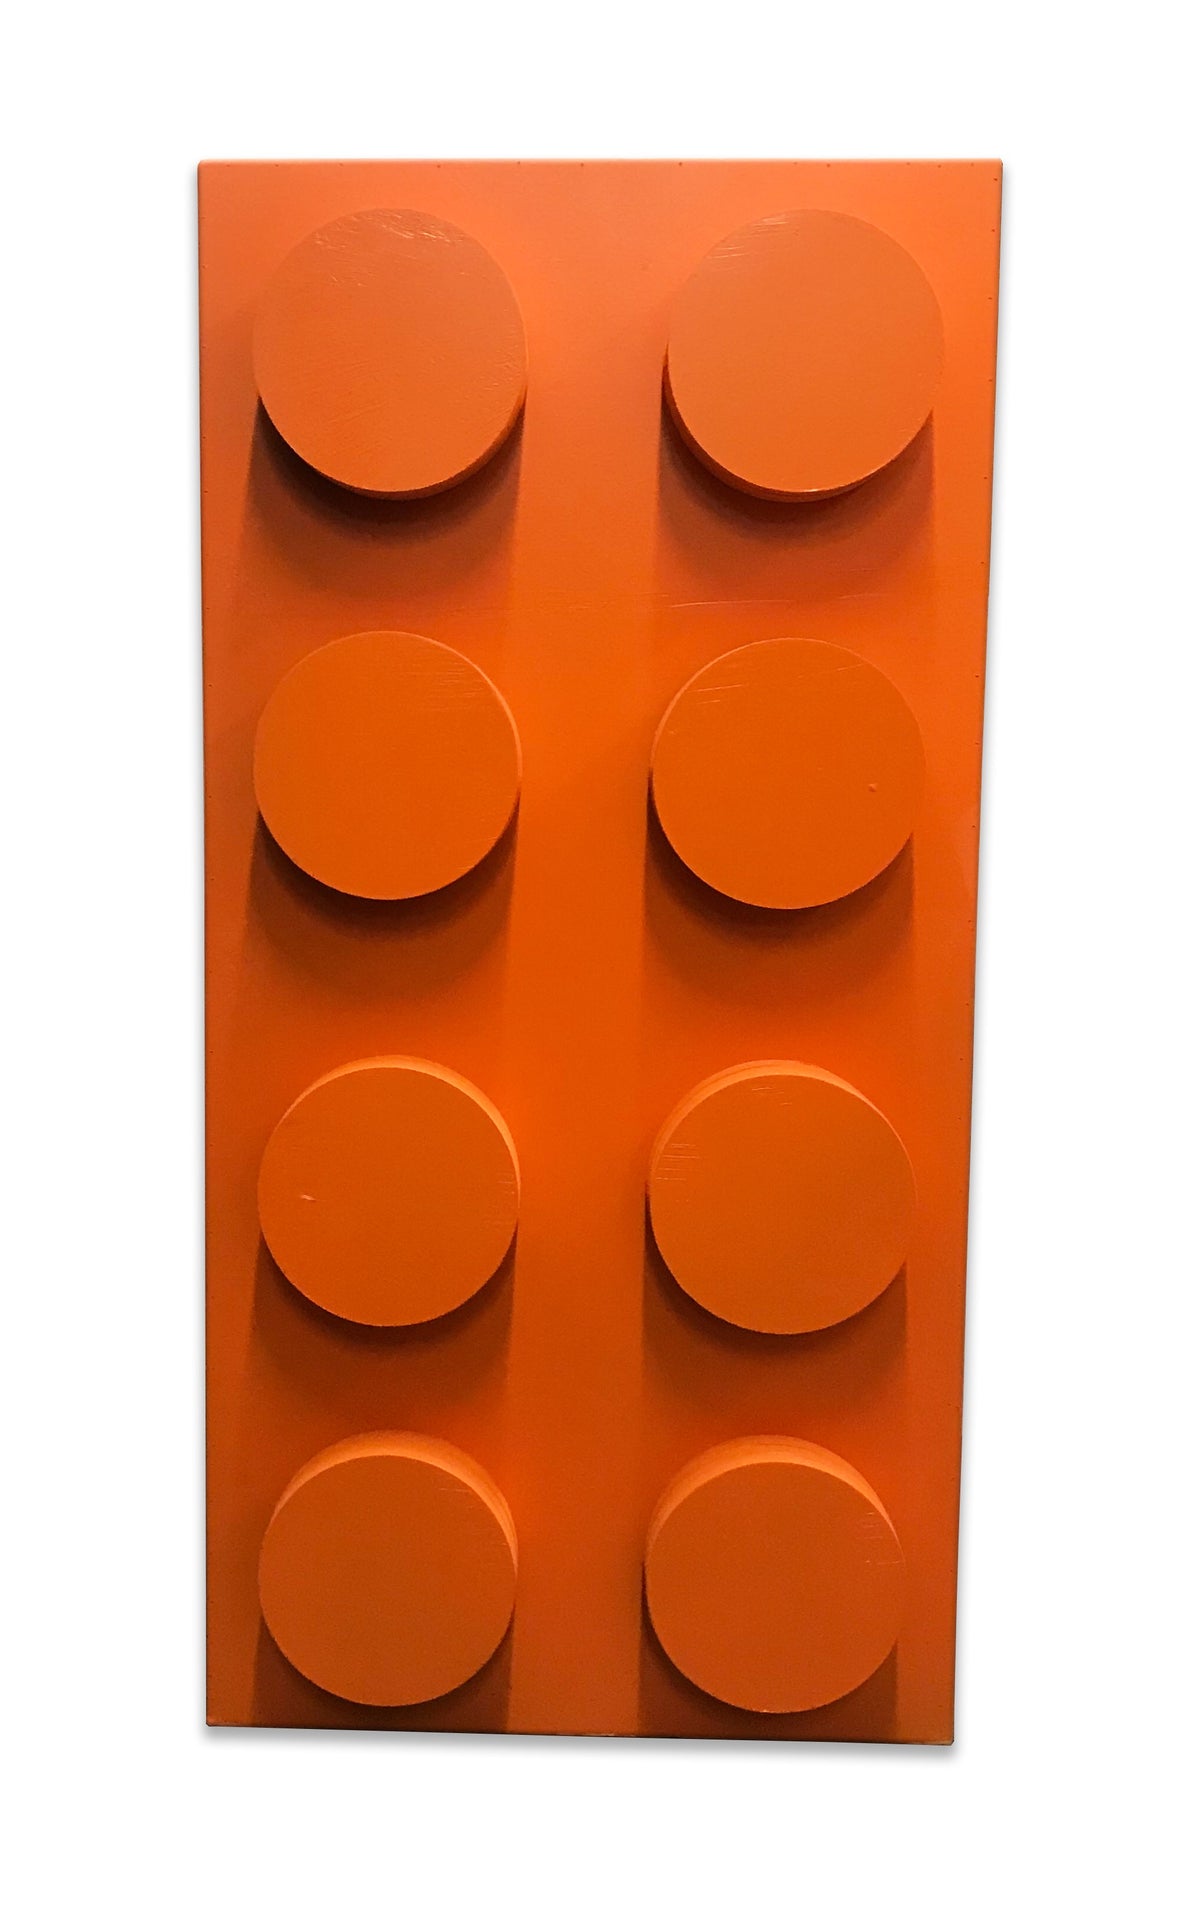 Orange Lego Brick